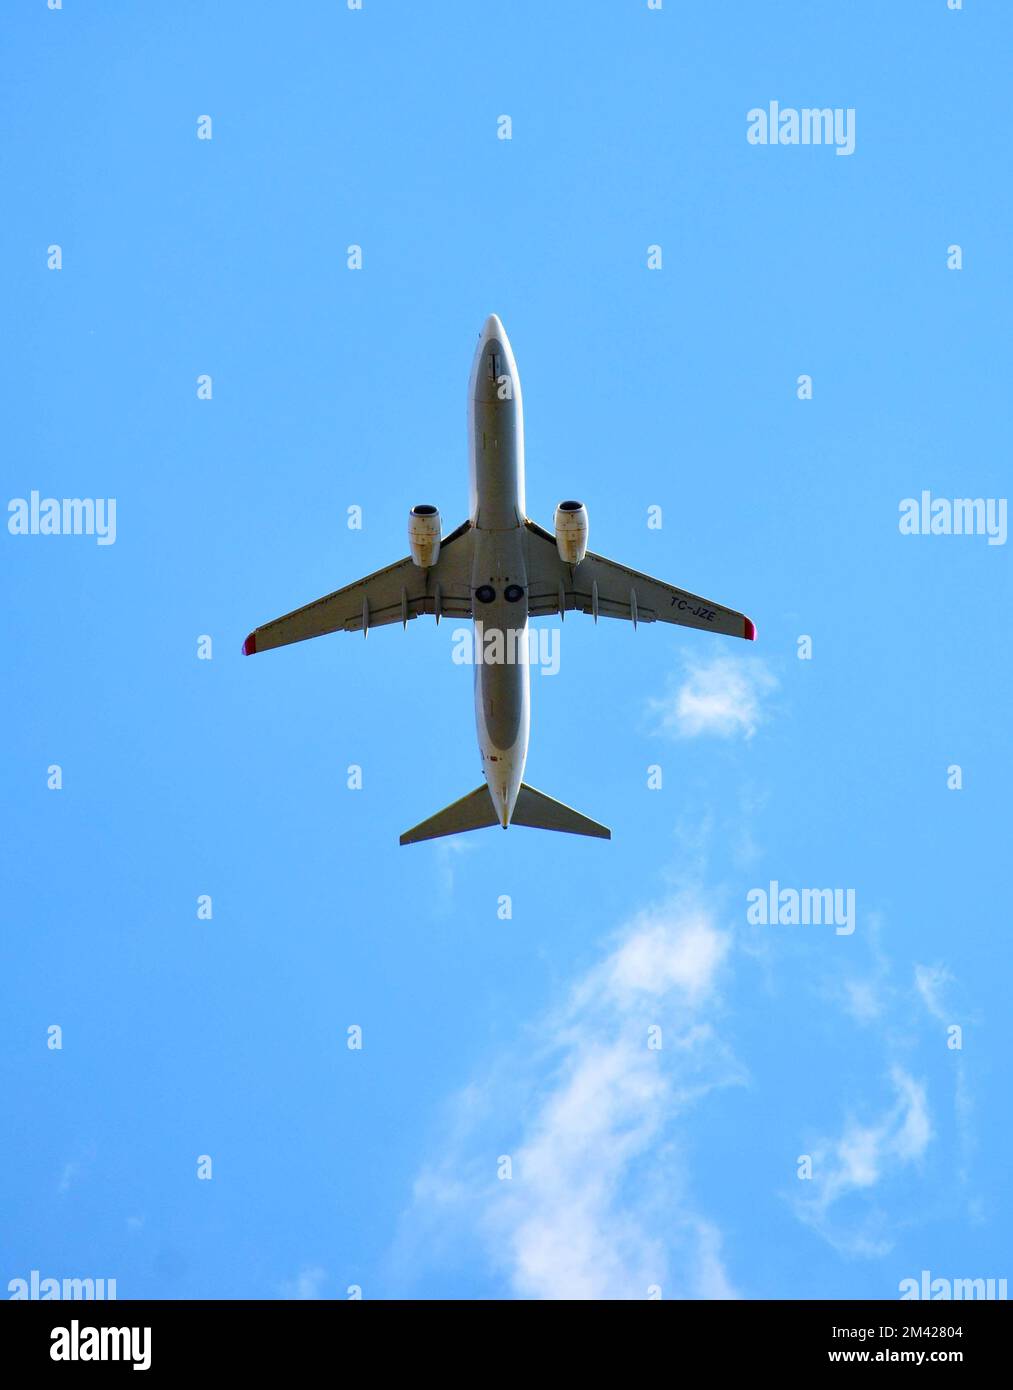 Vue de l'avion en vol depuis le sol. Ciel bleu clair avec des nuages veloutés Banque D'Images